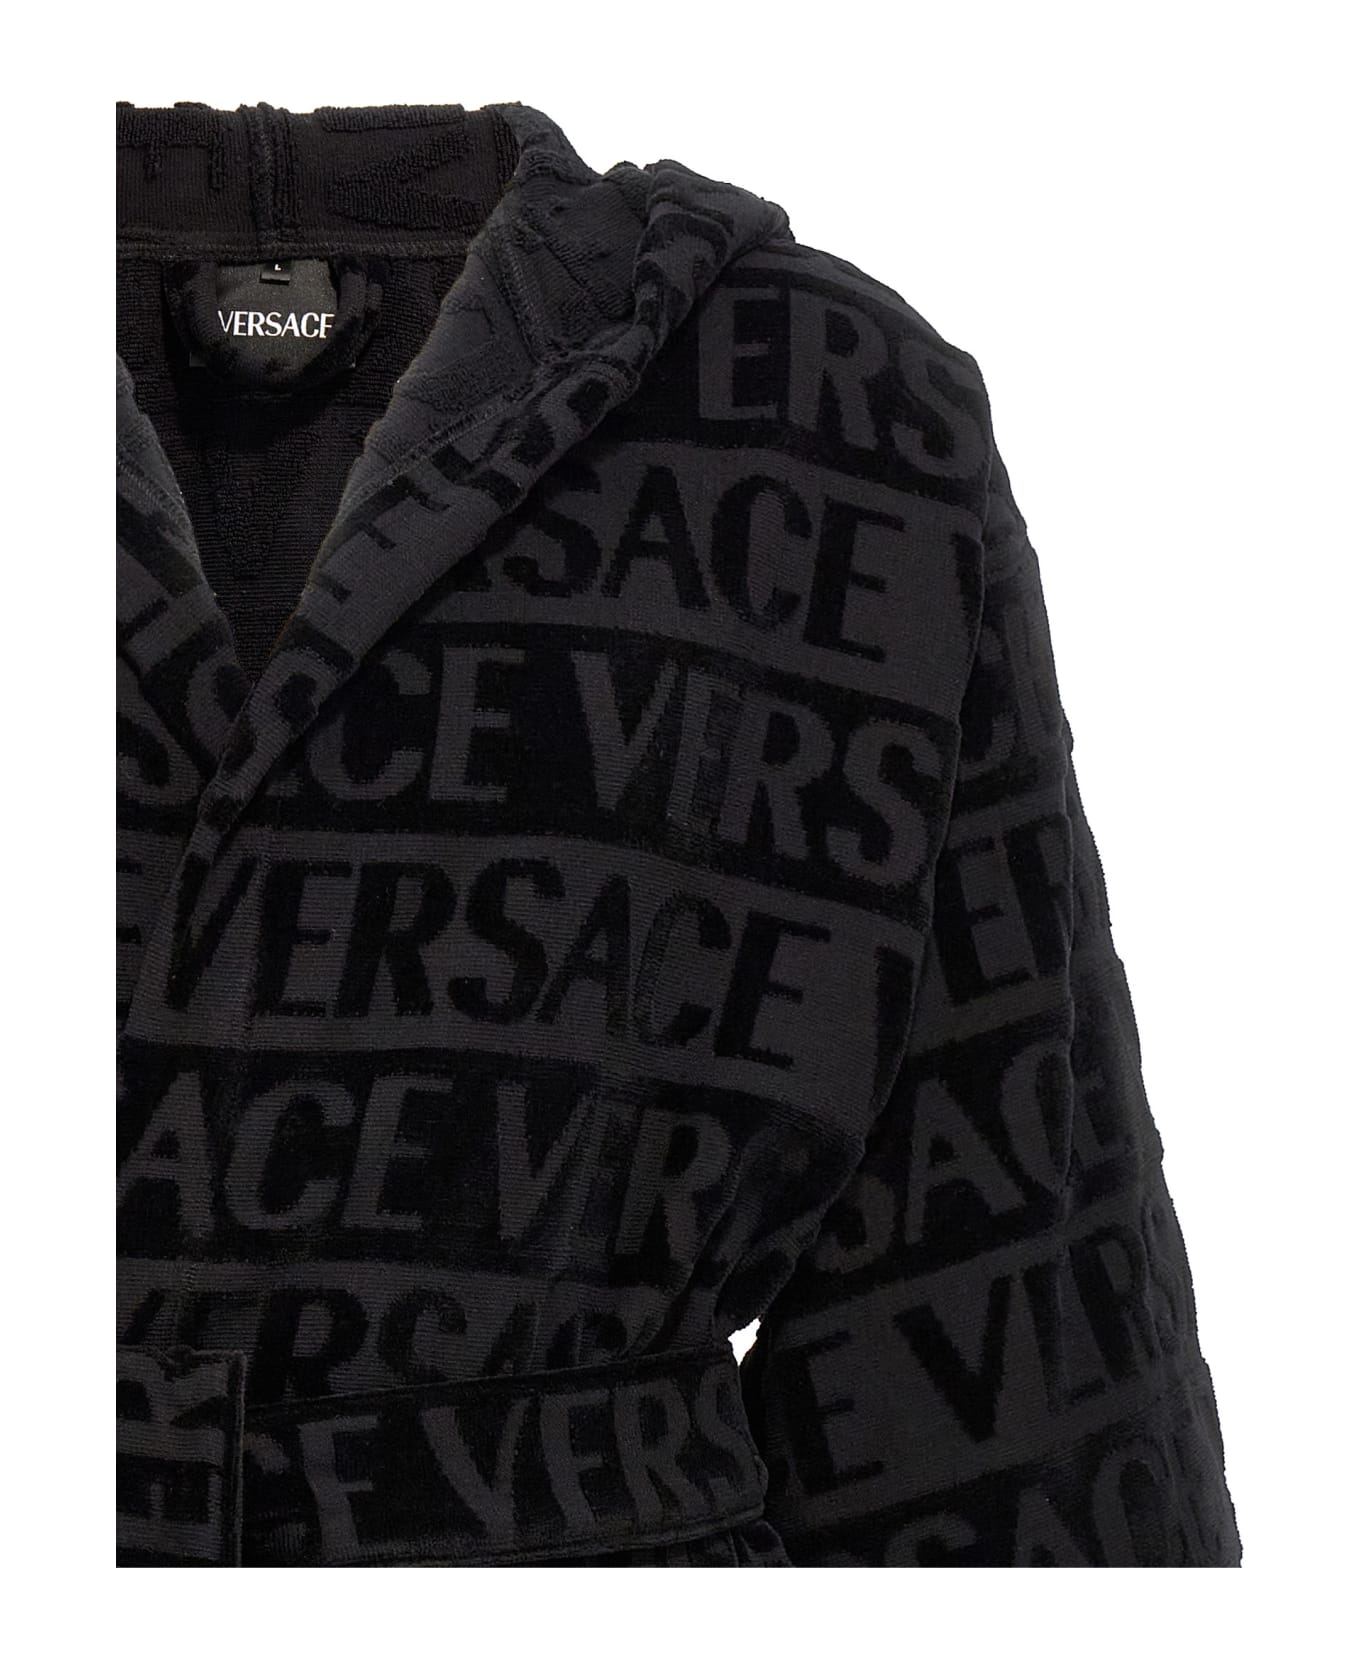 Versace 'versace Allover' Bathrobe - Black  